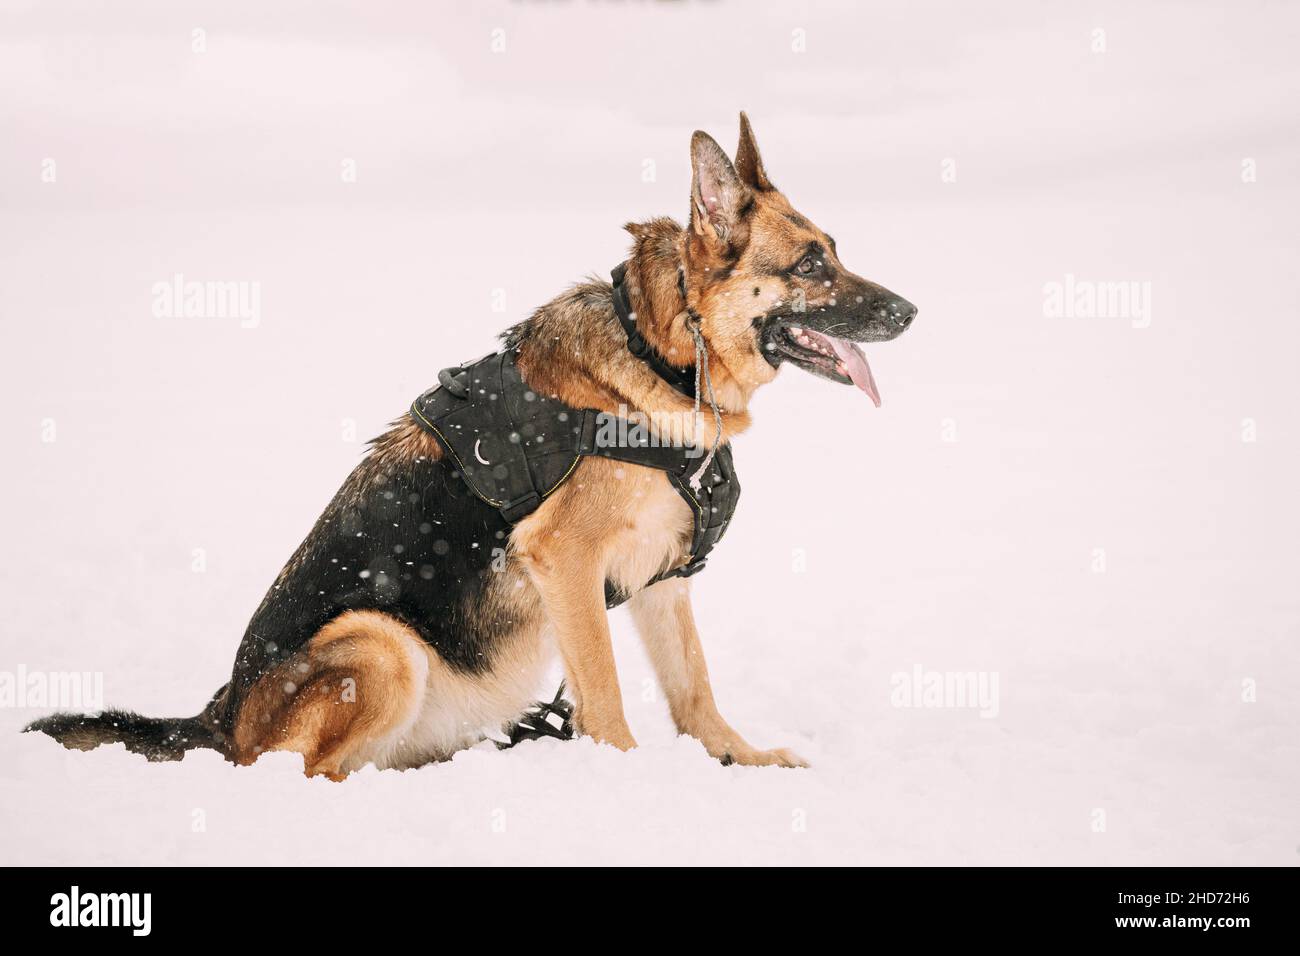 Chien de berger allemand de race pure en tenue spéciale assis sur la neige pendant l'entraînement.Chien de loup alsacien.Hiver Snowy Day. Banque D'Images